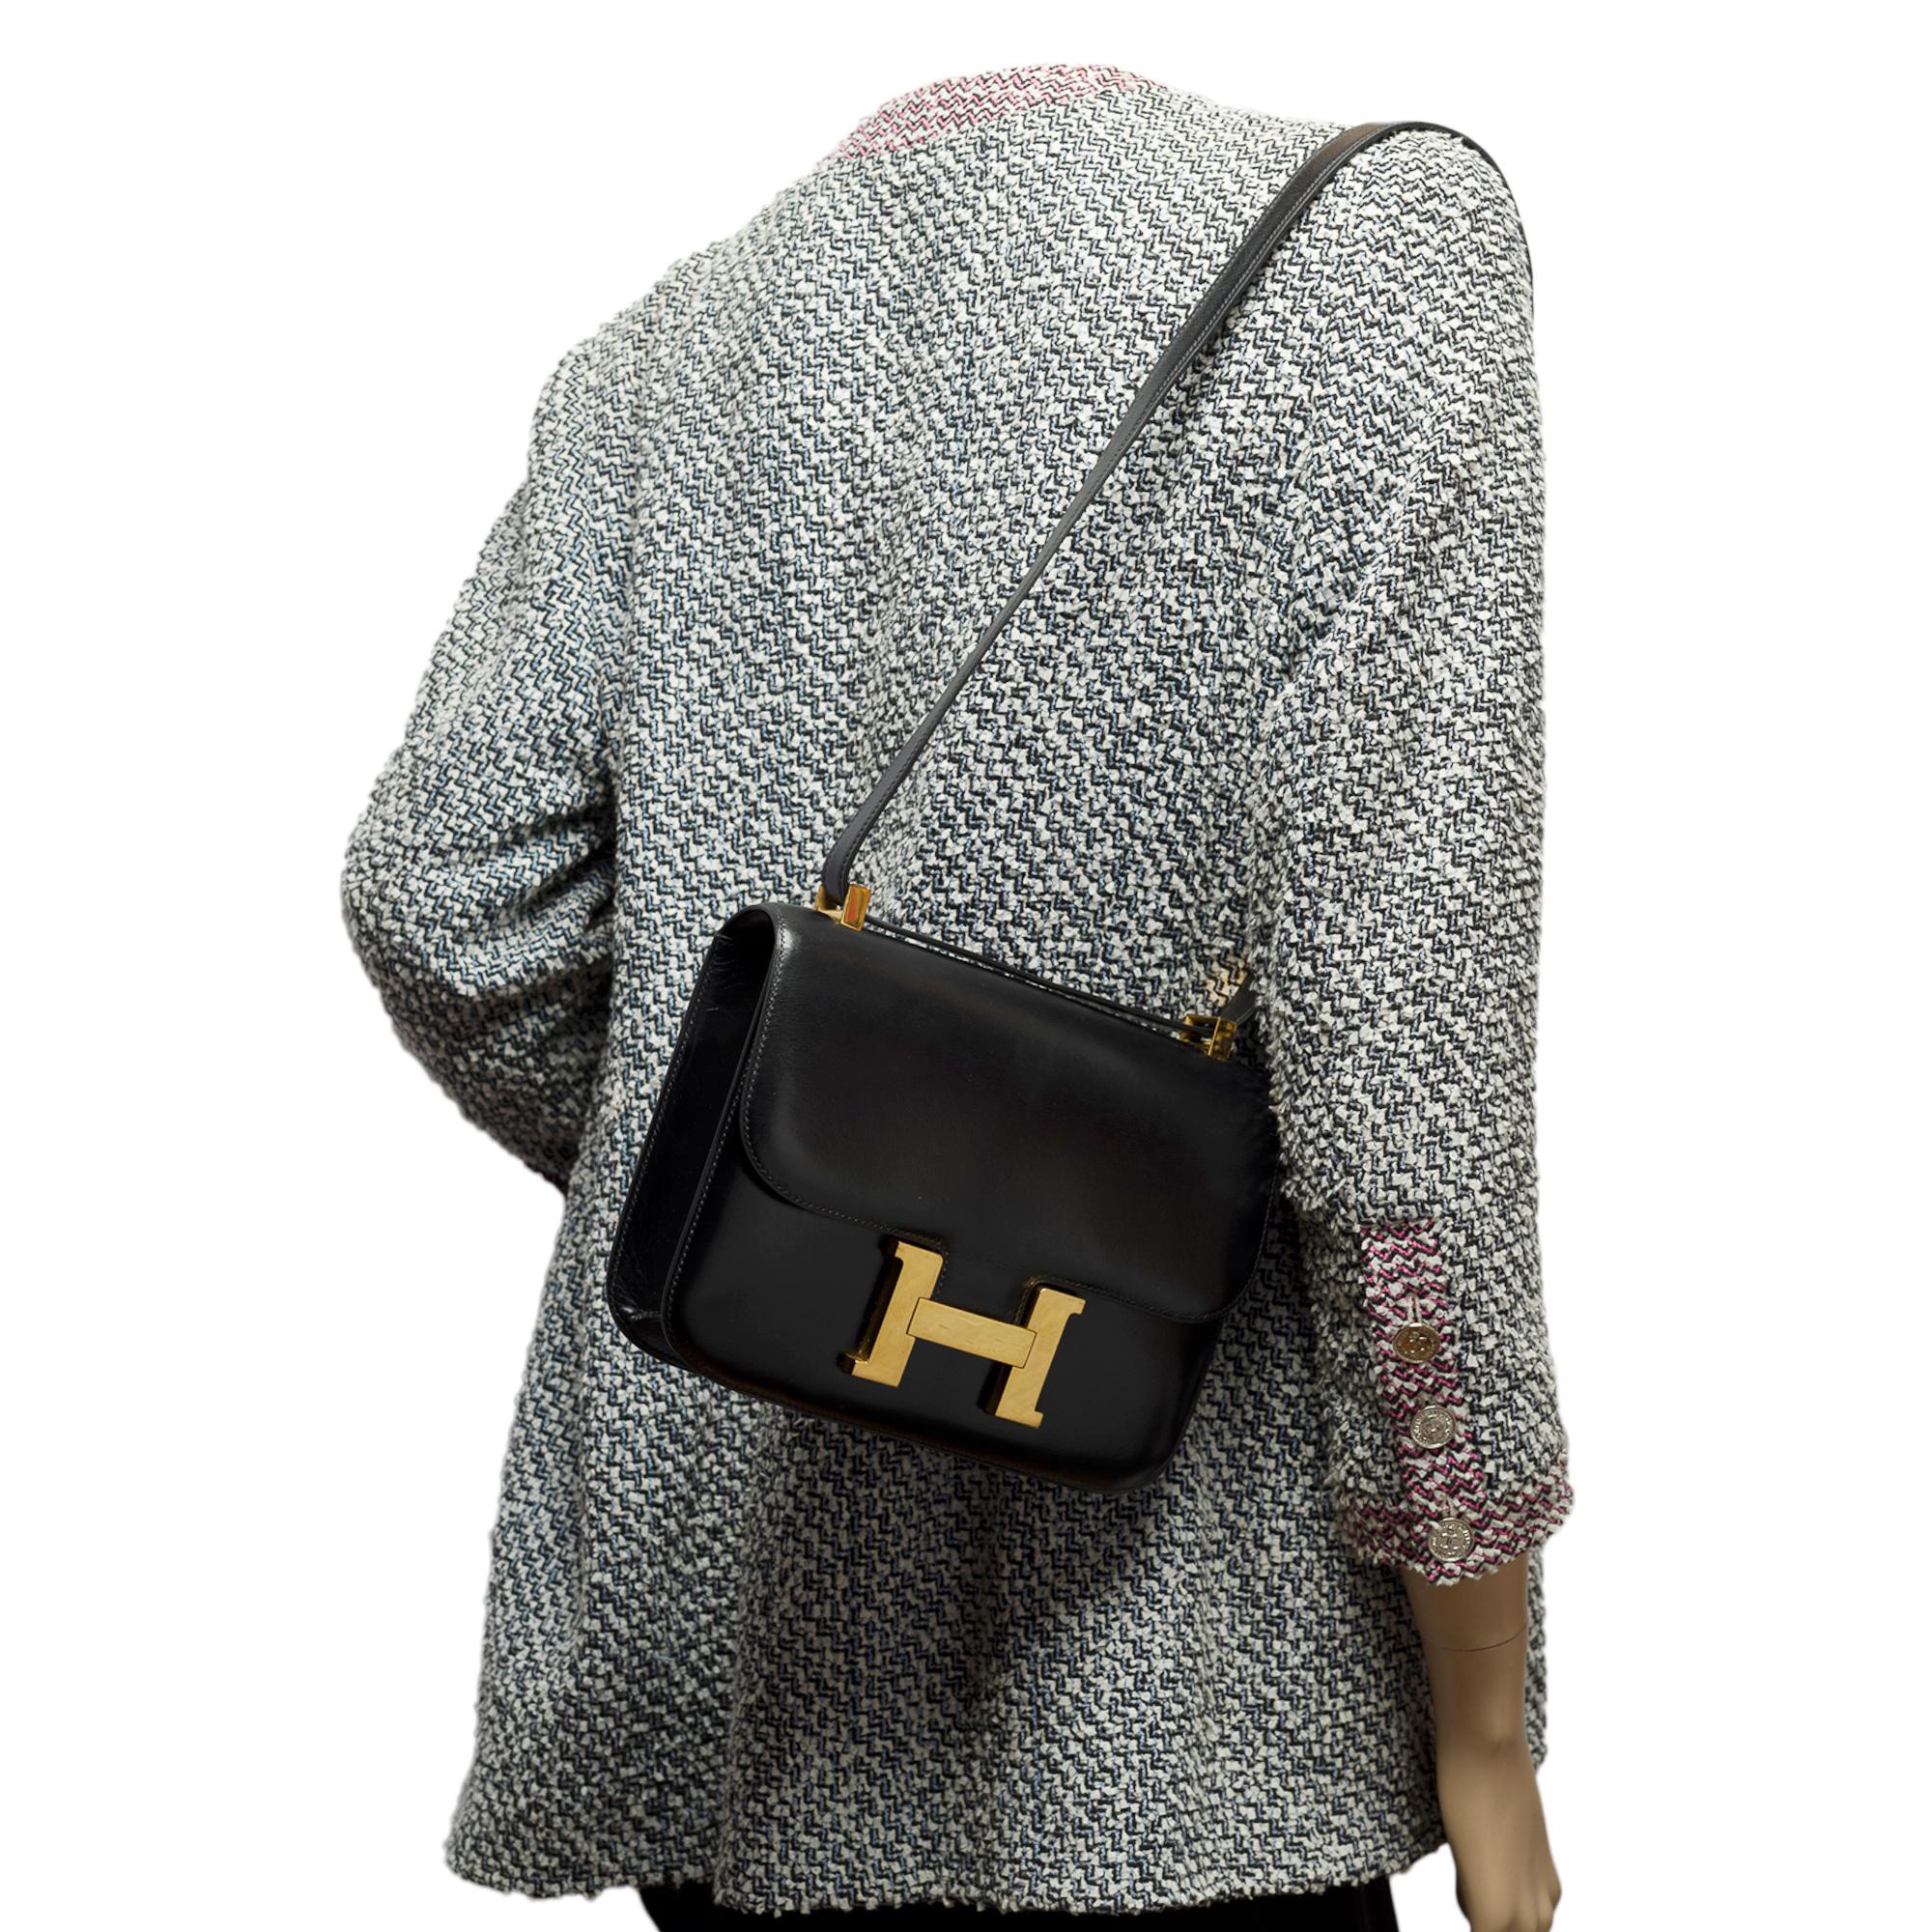 Stunning Hermes Constance 23 shoulder bag in black calfskin box leather, GHW 6